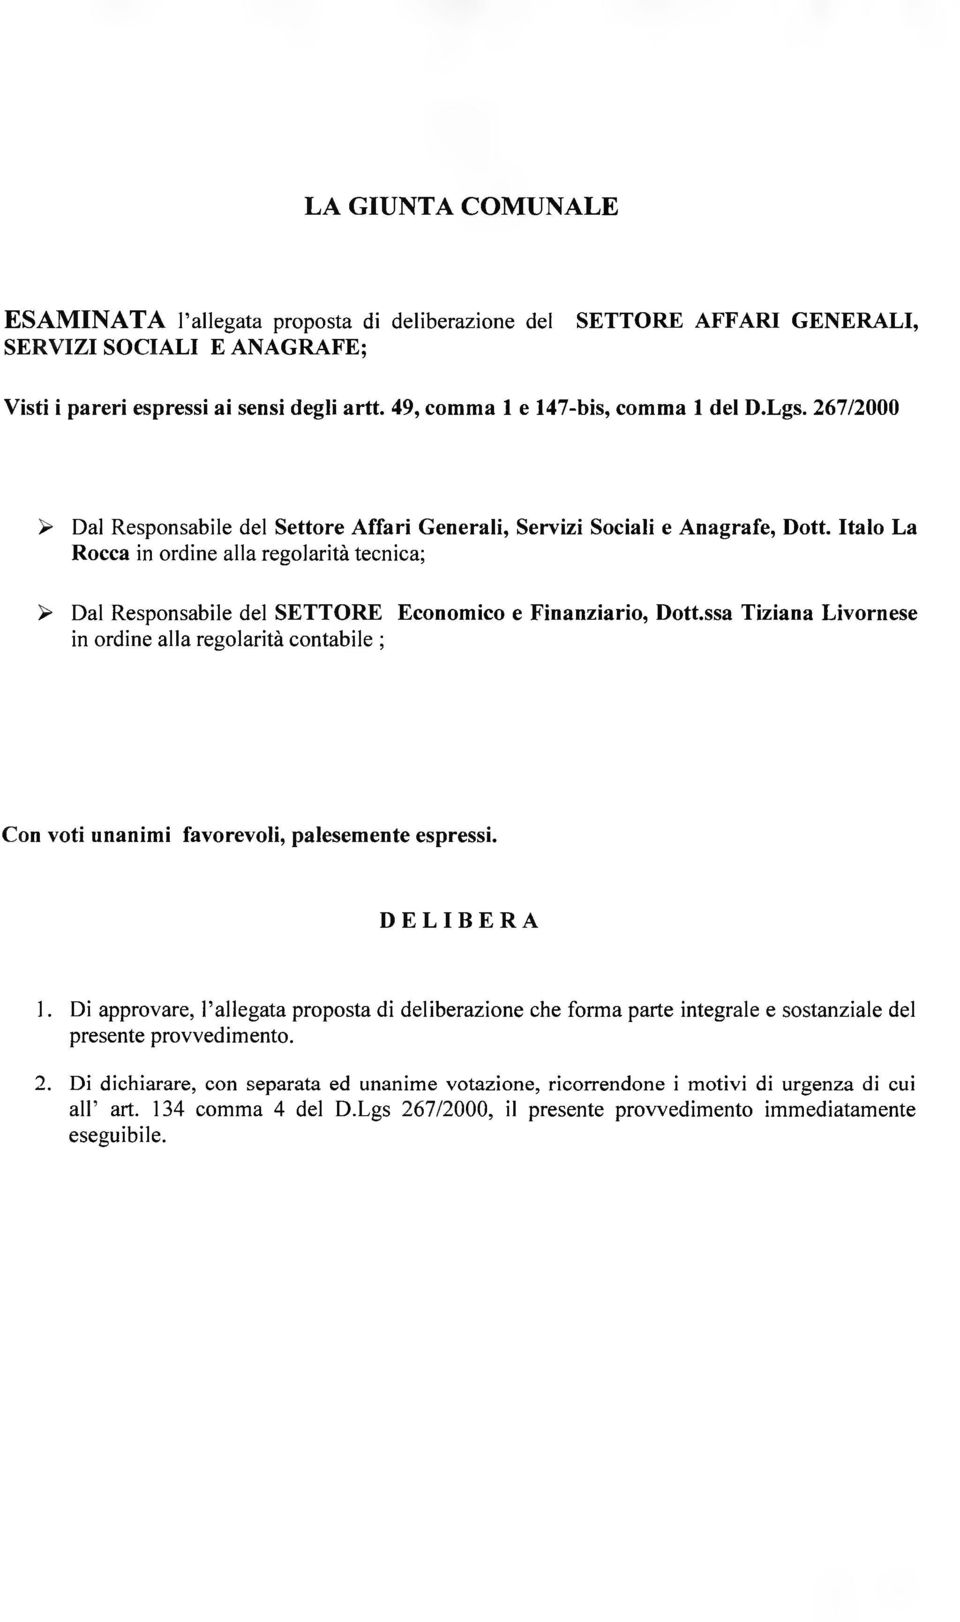 Italo La Rocca in ordine alla regolarità tecnica; > Dal Responsabile del SETTORE Economico e Finanziario, Dott.